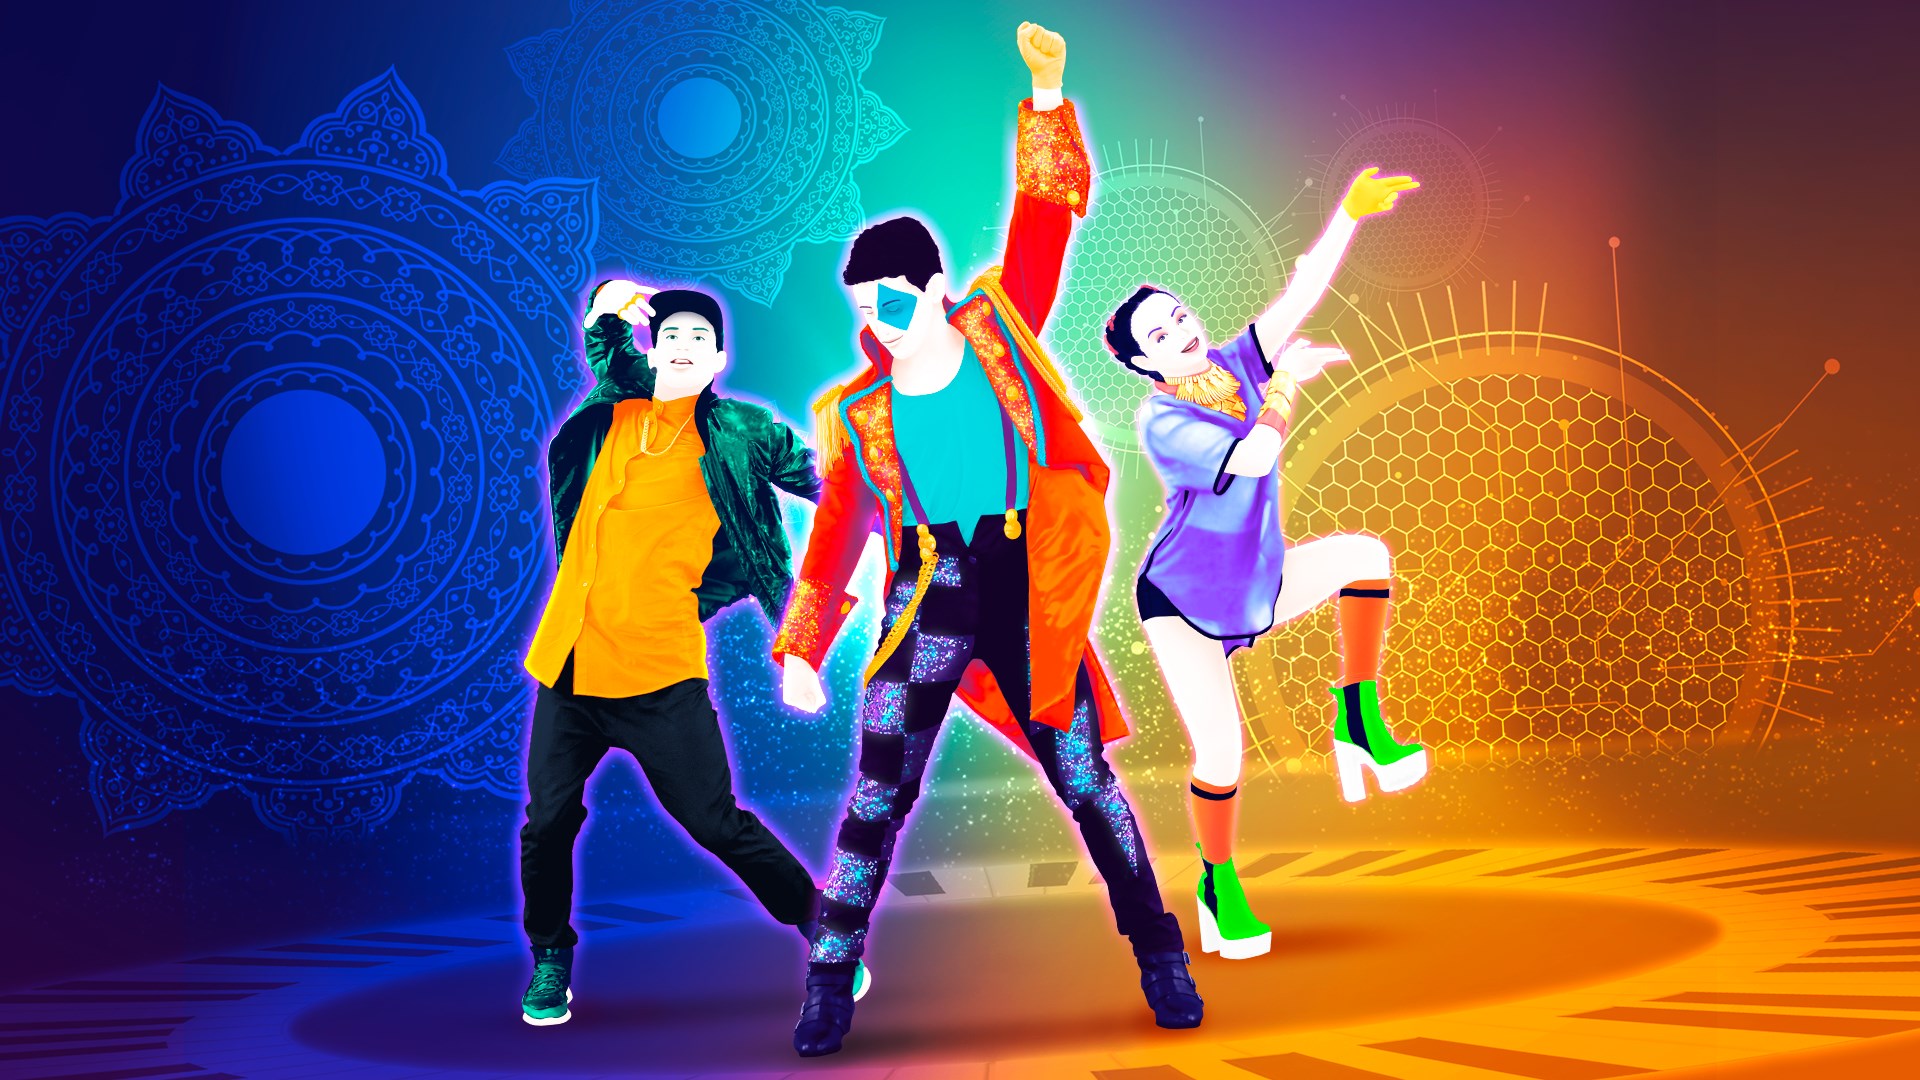 Buy Just Dance 2017® - Microsoft Store en-IL